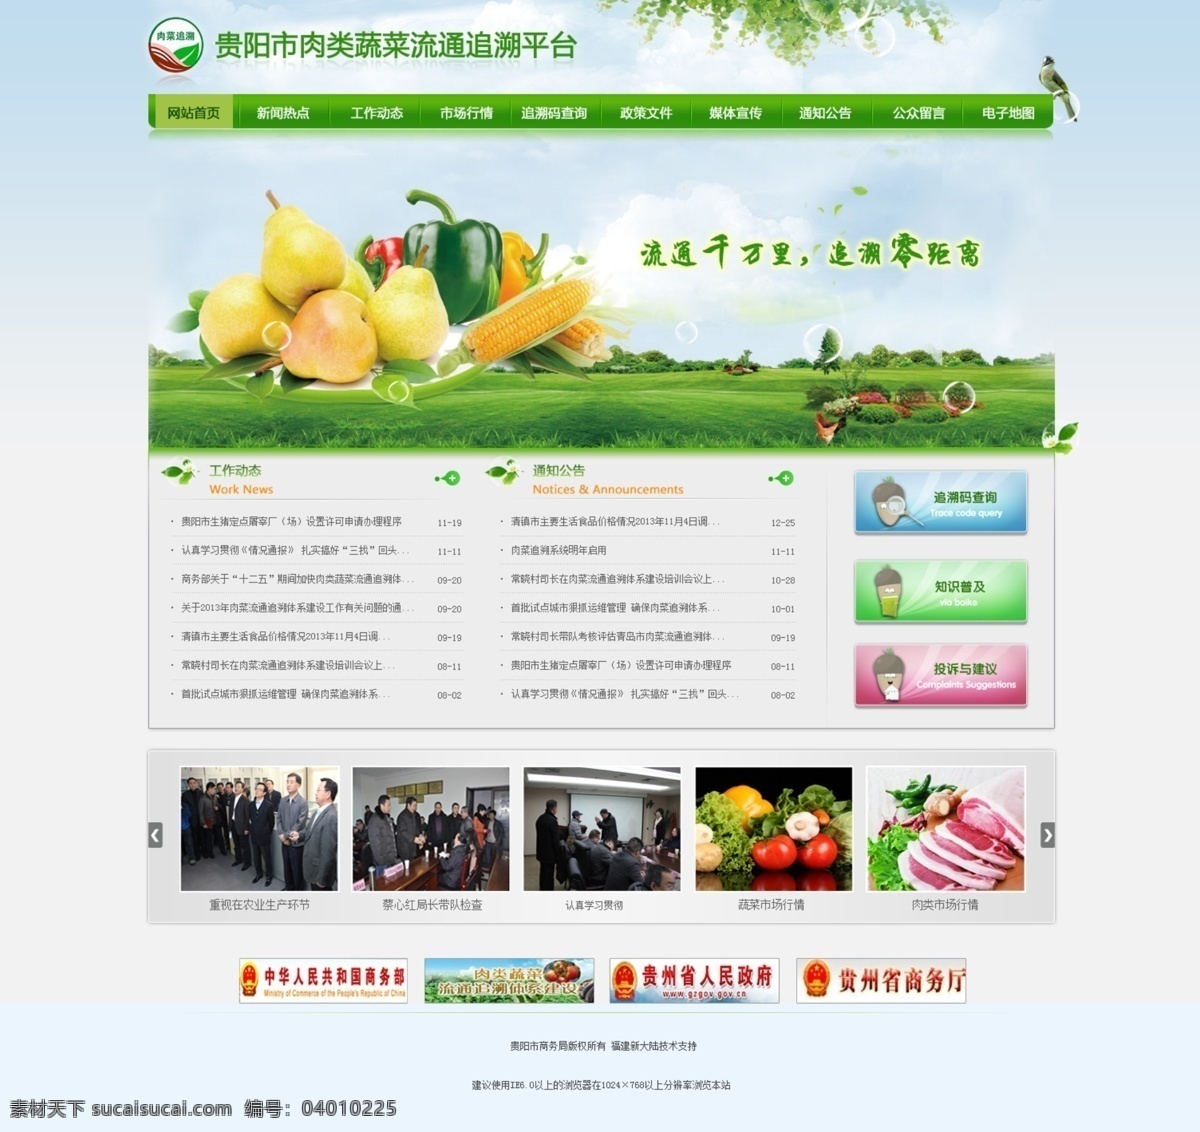 绿色食品 环保 肉类 蔬菜 网页模板 源文件 中文模板 追溯平台 风景 生活 旅游餐饮